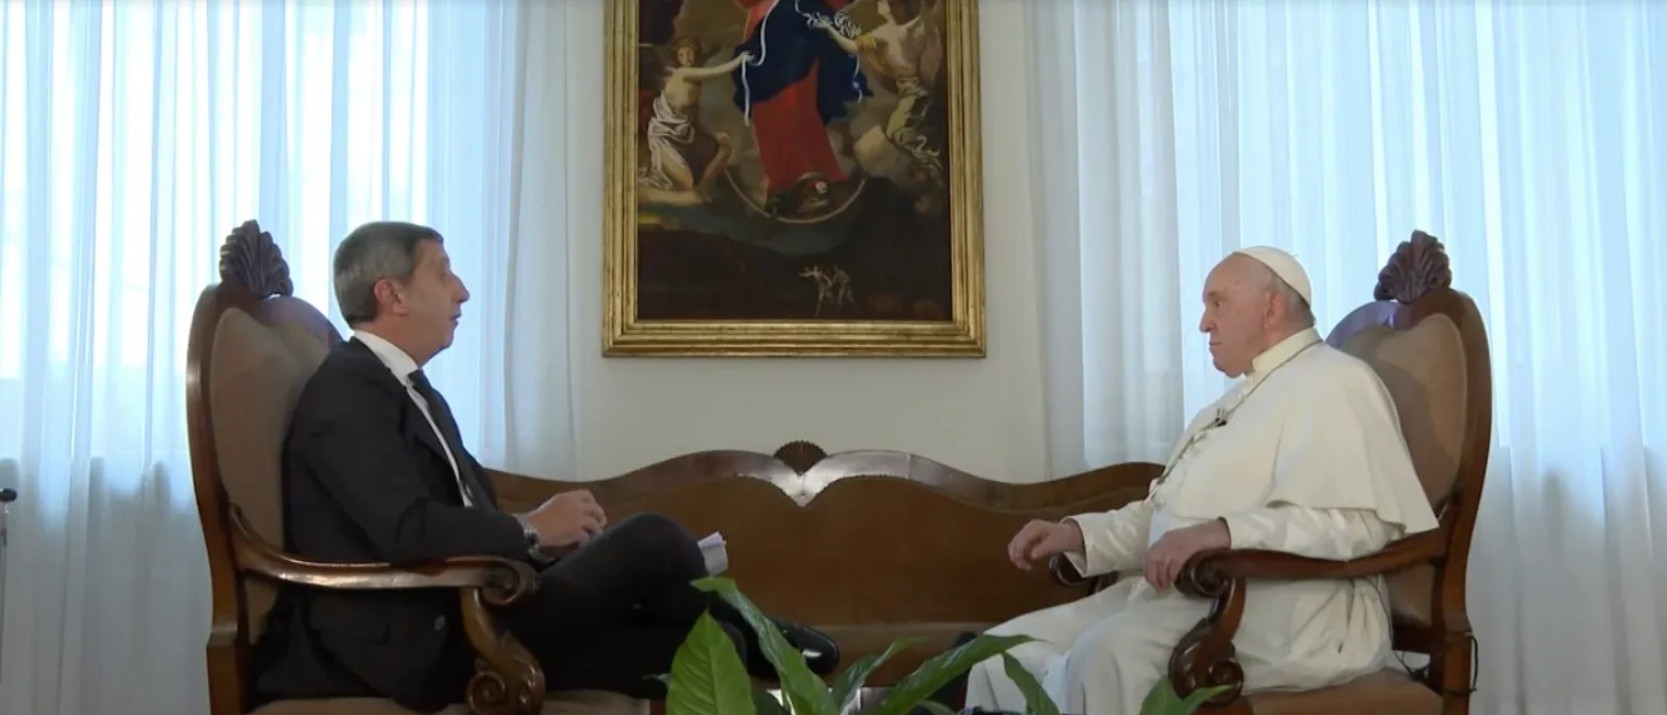 Le pape François a répondu aux questions de la TV italienne RAI 1 | capture d'écran 